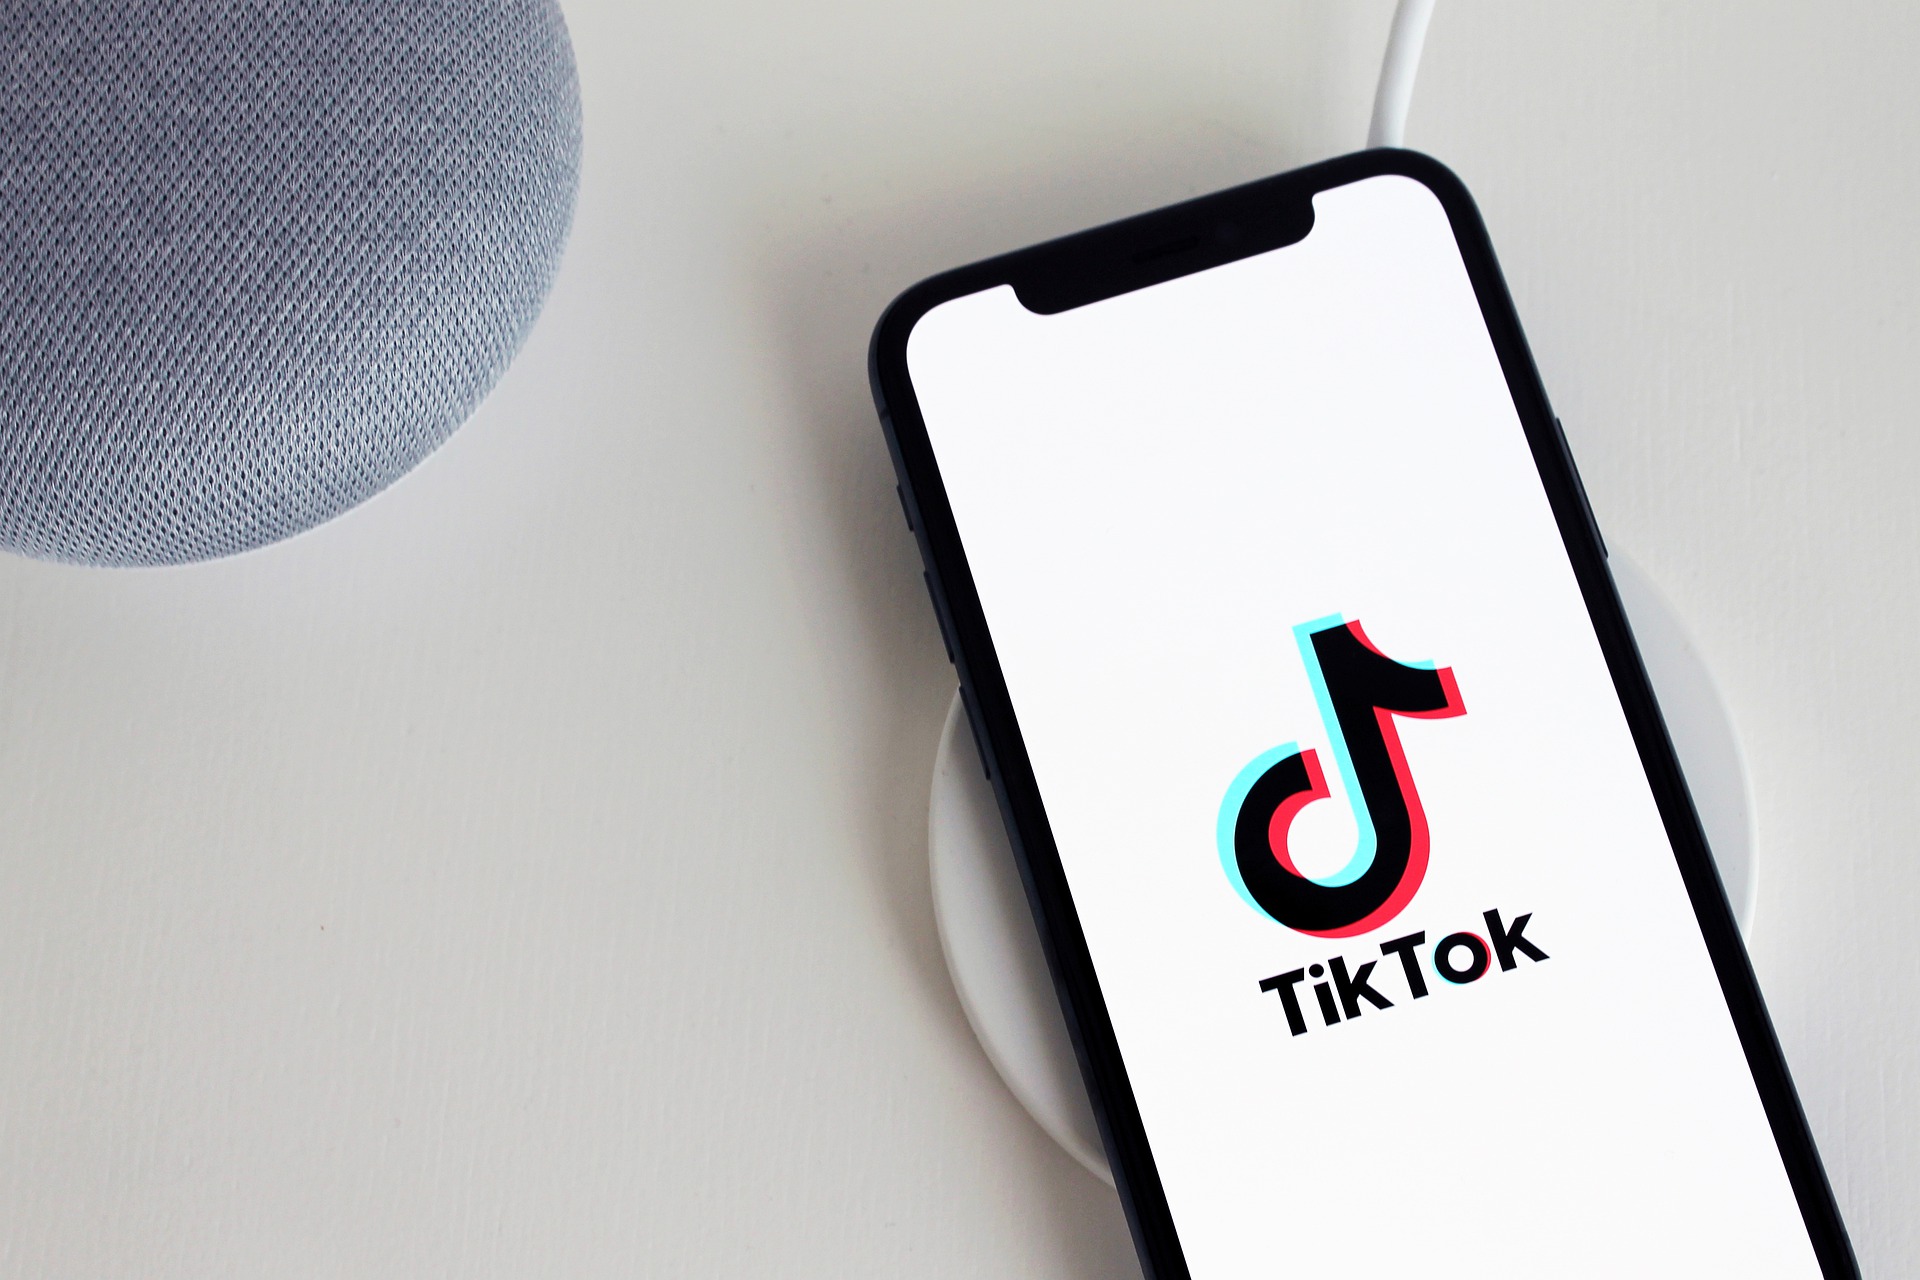 Dans ce guide, nous allons vous expliquer comment vérifier qui consulte votre profil et vos vidéos TikTok, en expliquant également comment rendre votre compte TikTok privé.